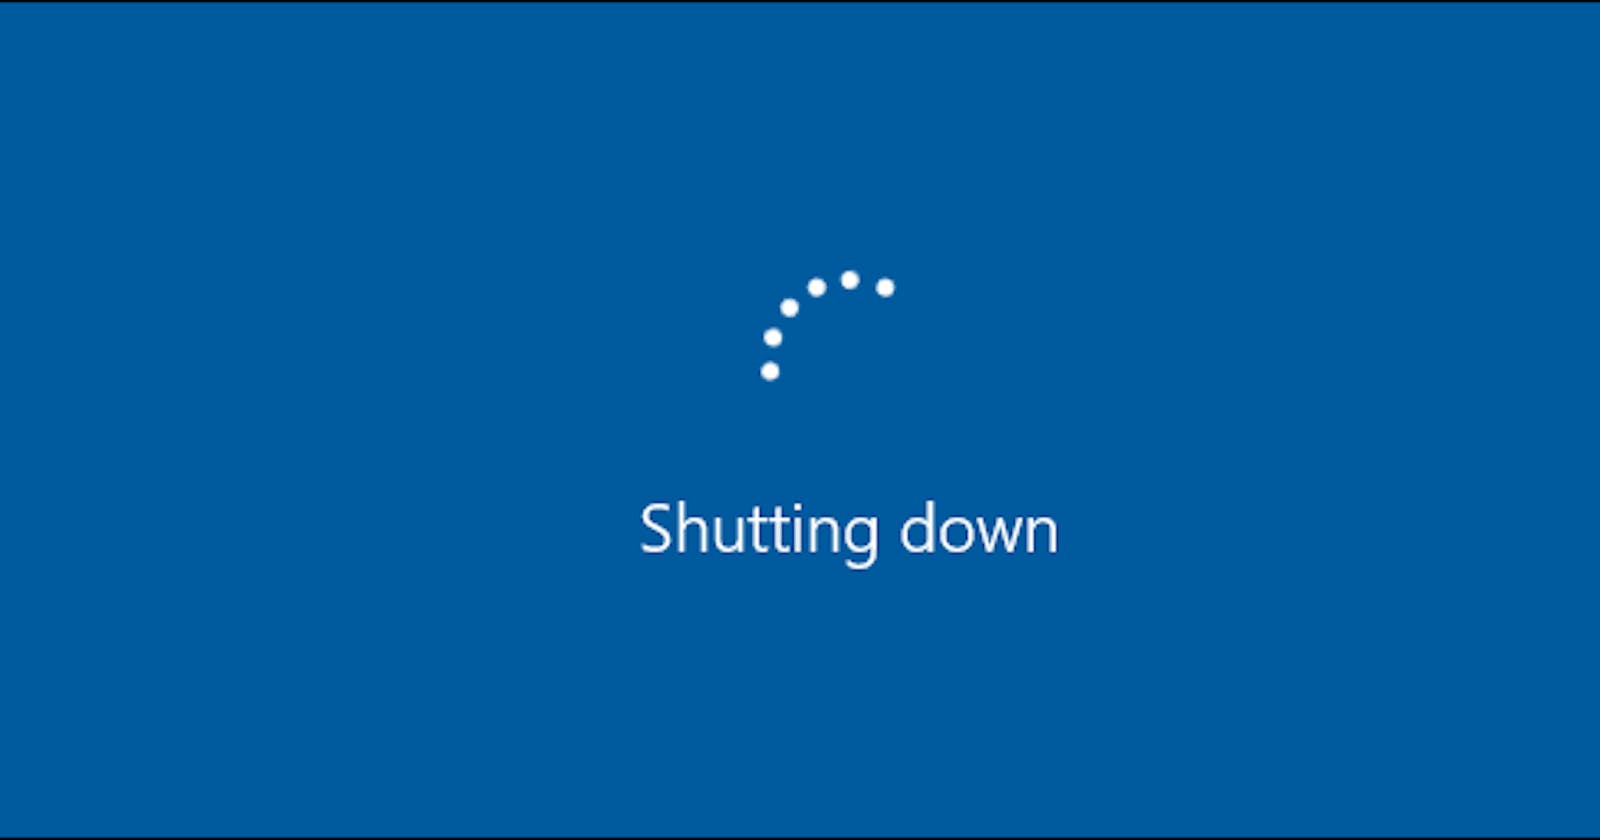 Python code to shutdown computer